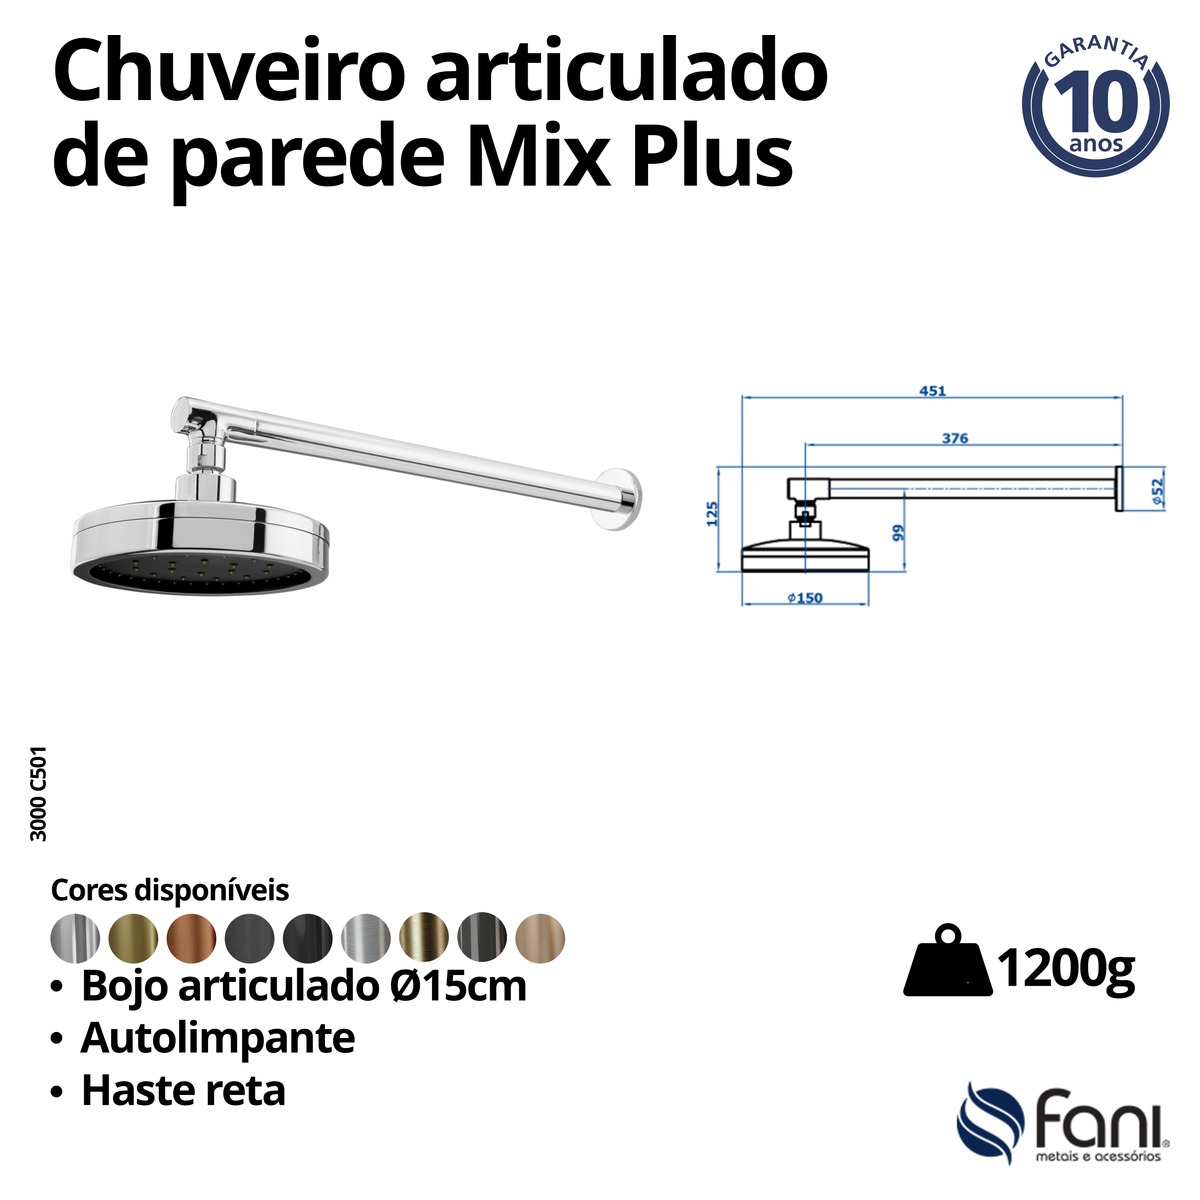 Chuveiro Articulado Parede Metal Mix Plus 3000OV501 Ouro Velho Fani